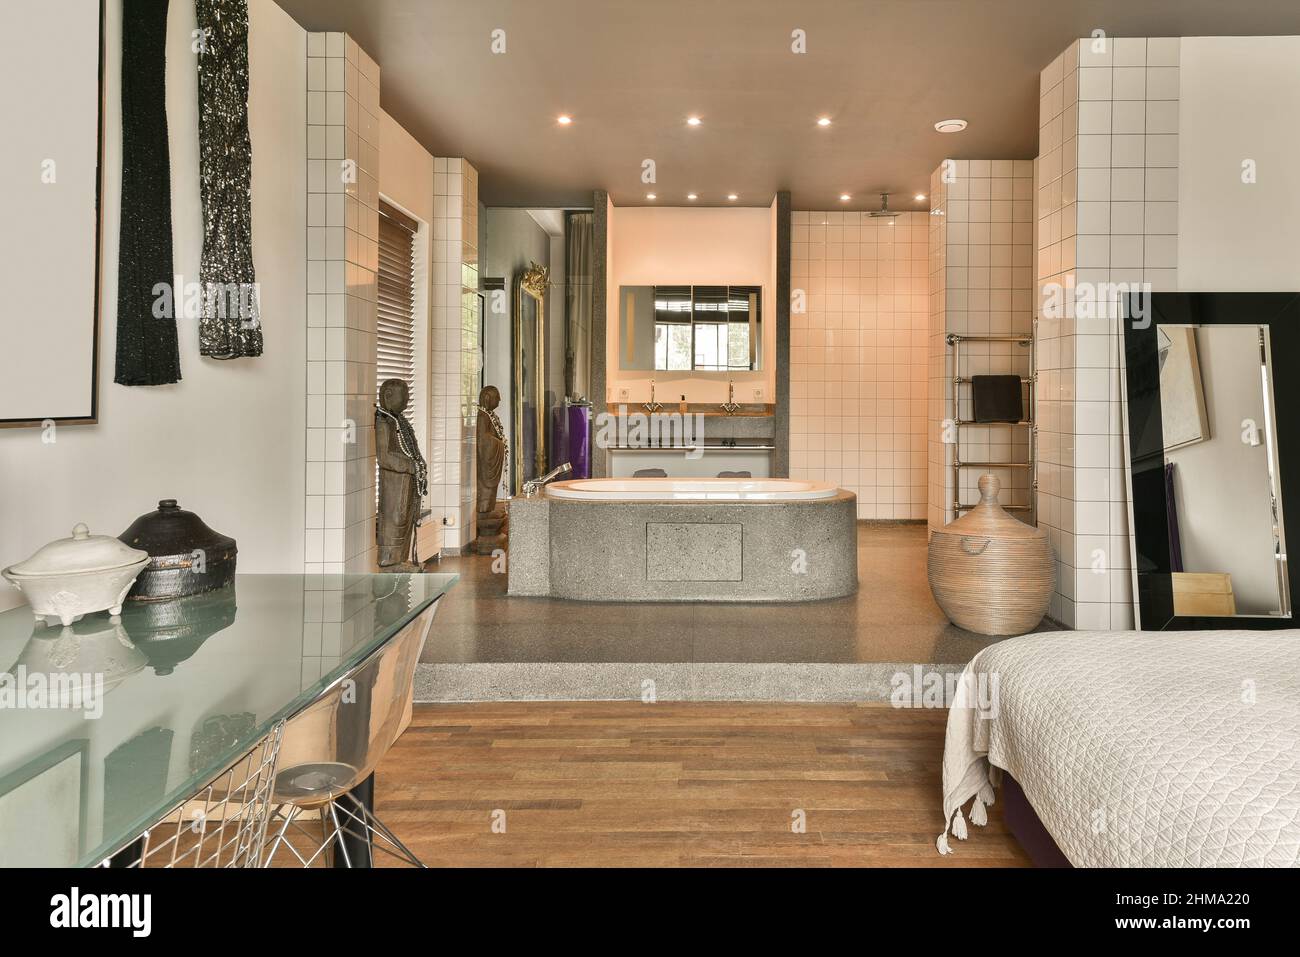 Modernes, offenes Badezimmer mit Keramikbadewanne und Schlafzimmer mit  komfortablem Bett in der Nähe des Fensters in einem hellen Apartment  Stockfotografie - Alamy